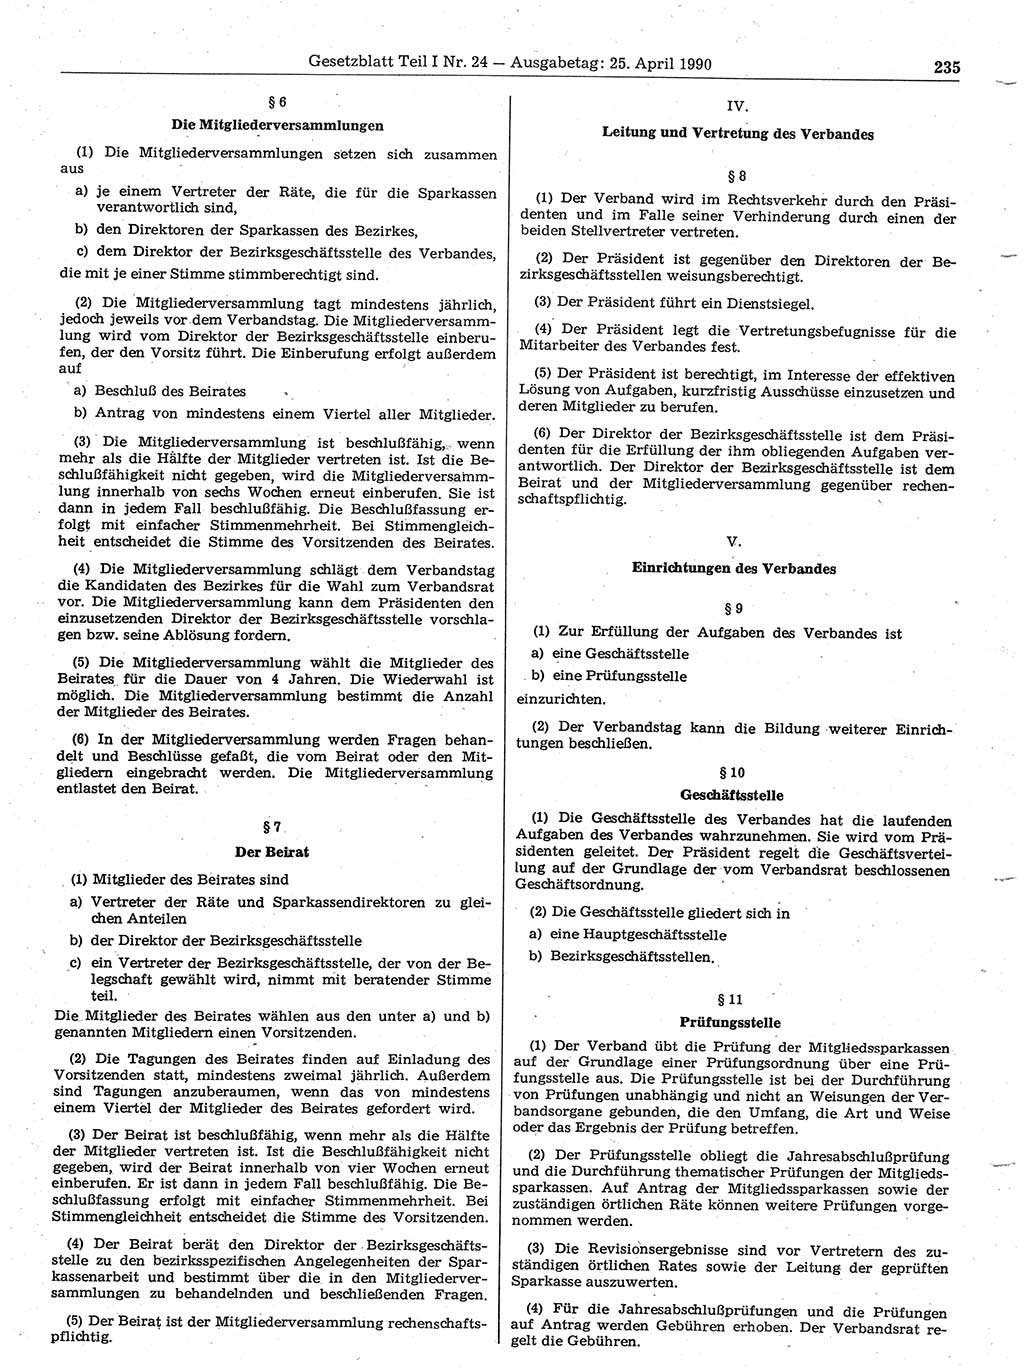 Gesetzblatt (GBl.) der Deutschen Demokratischen Republik (DDR) Teil Ⅰ 1990, Seite 235 (GBl. DDR Ⅰ 1990, S. 235)